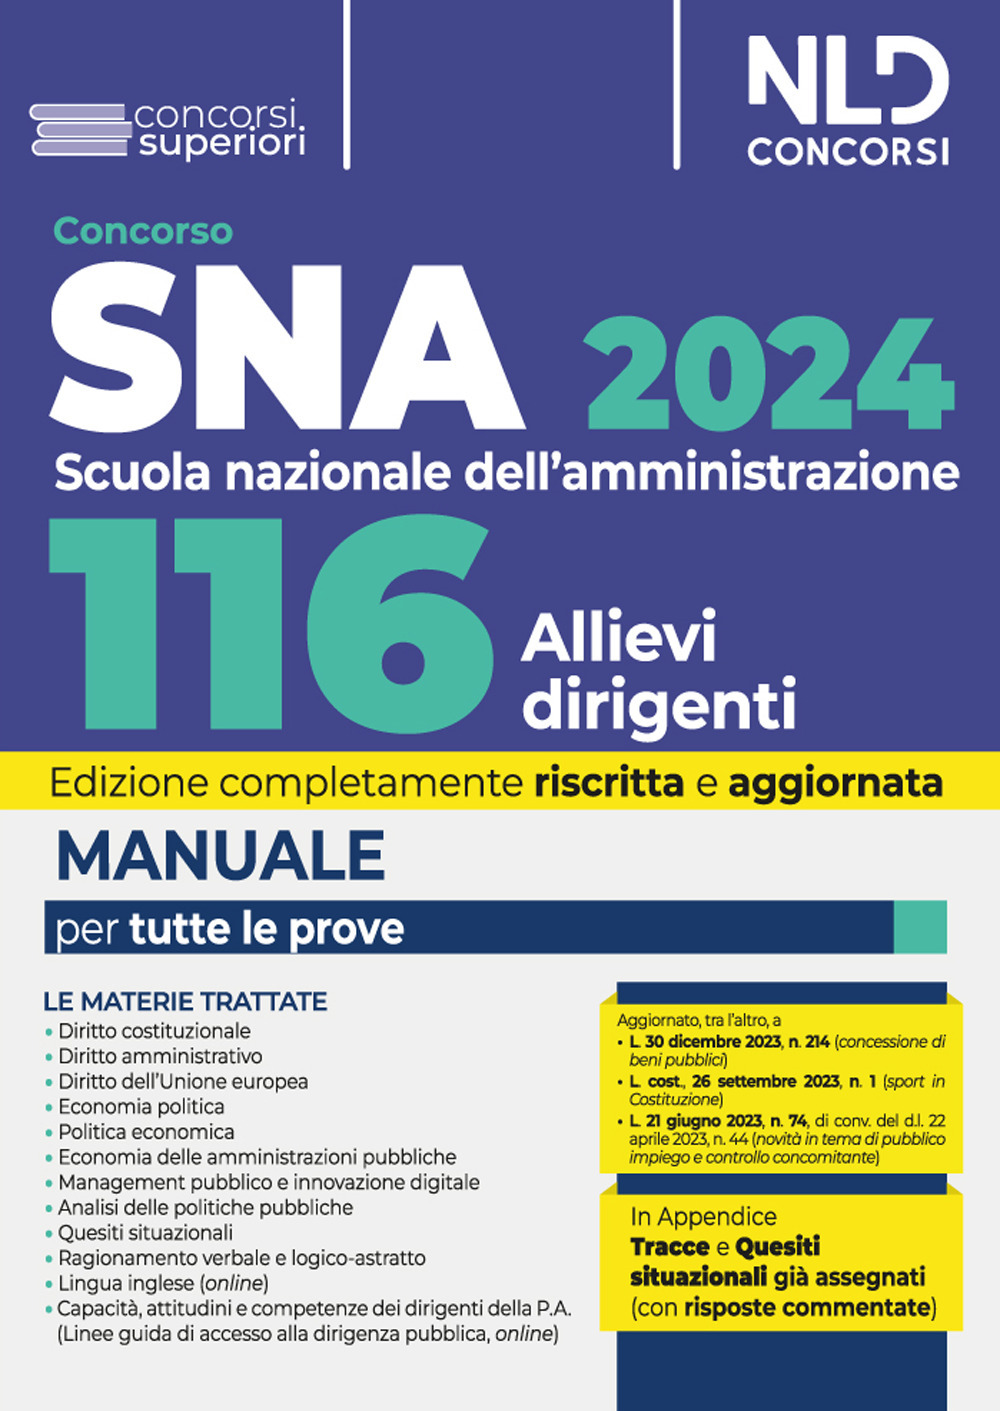 Concorso 116 allievi dirigenti SNA 2024. Manuale per la preparazione al concorso